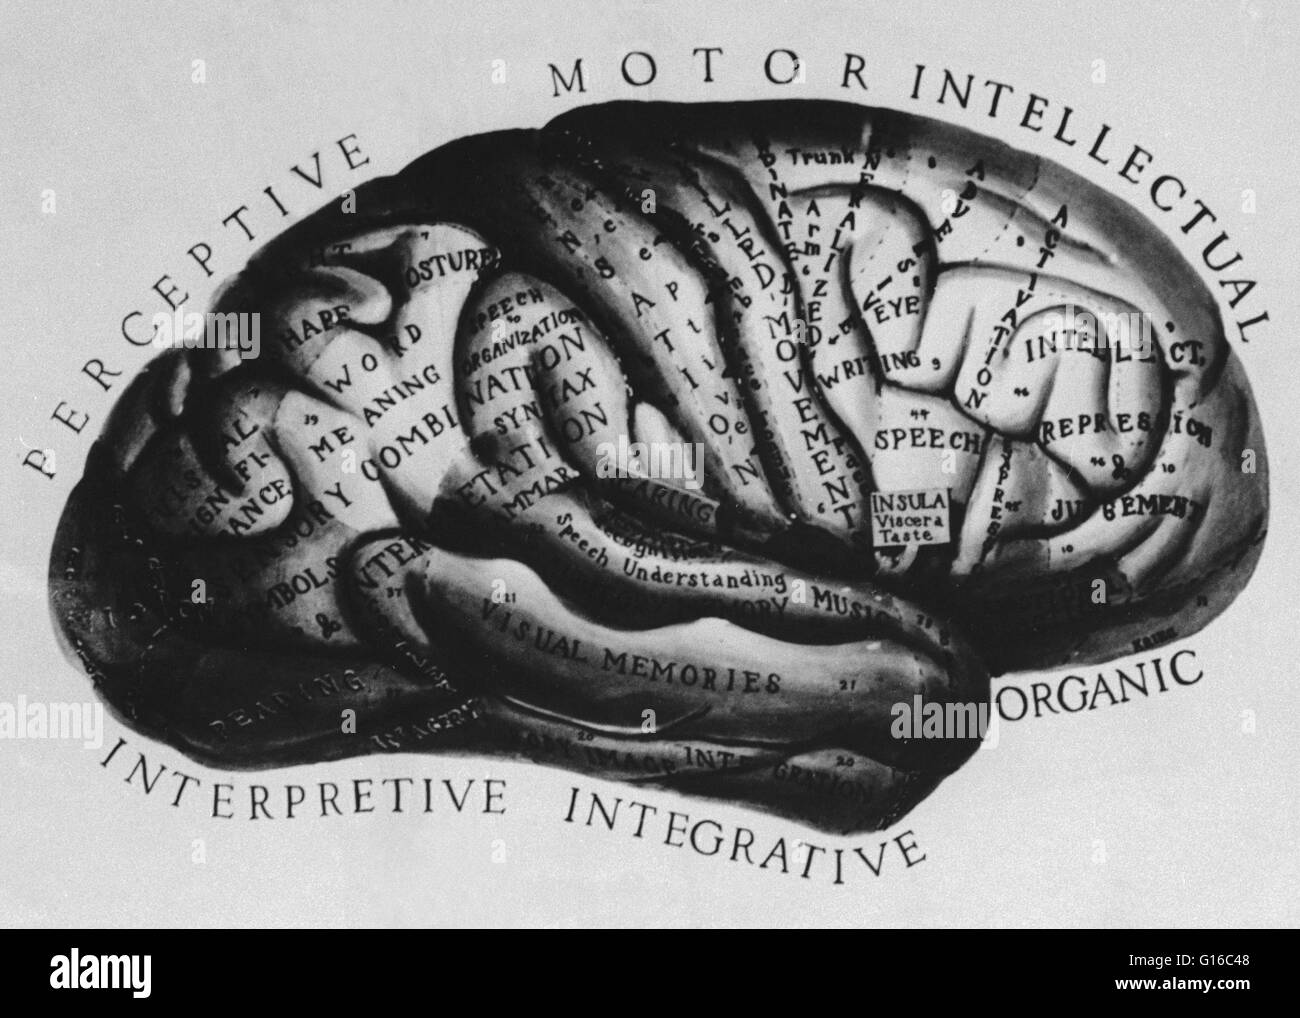 Eine historische anatomische Abbildung des Gehirns mit Teile beschriftet das medizinische Wissen der Zeit entsprechend. Stockfoto